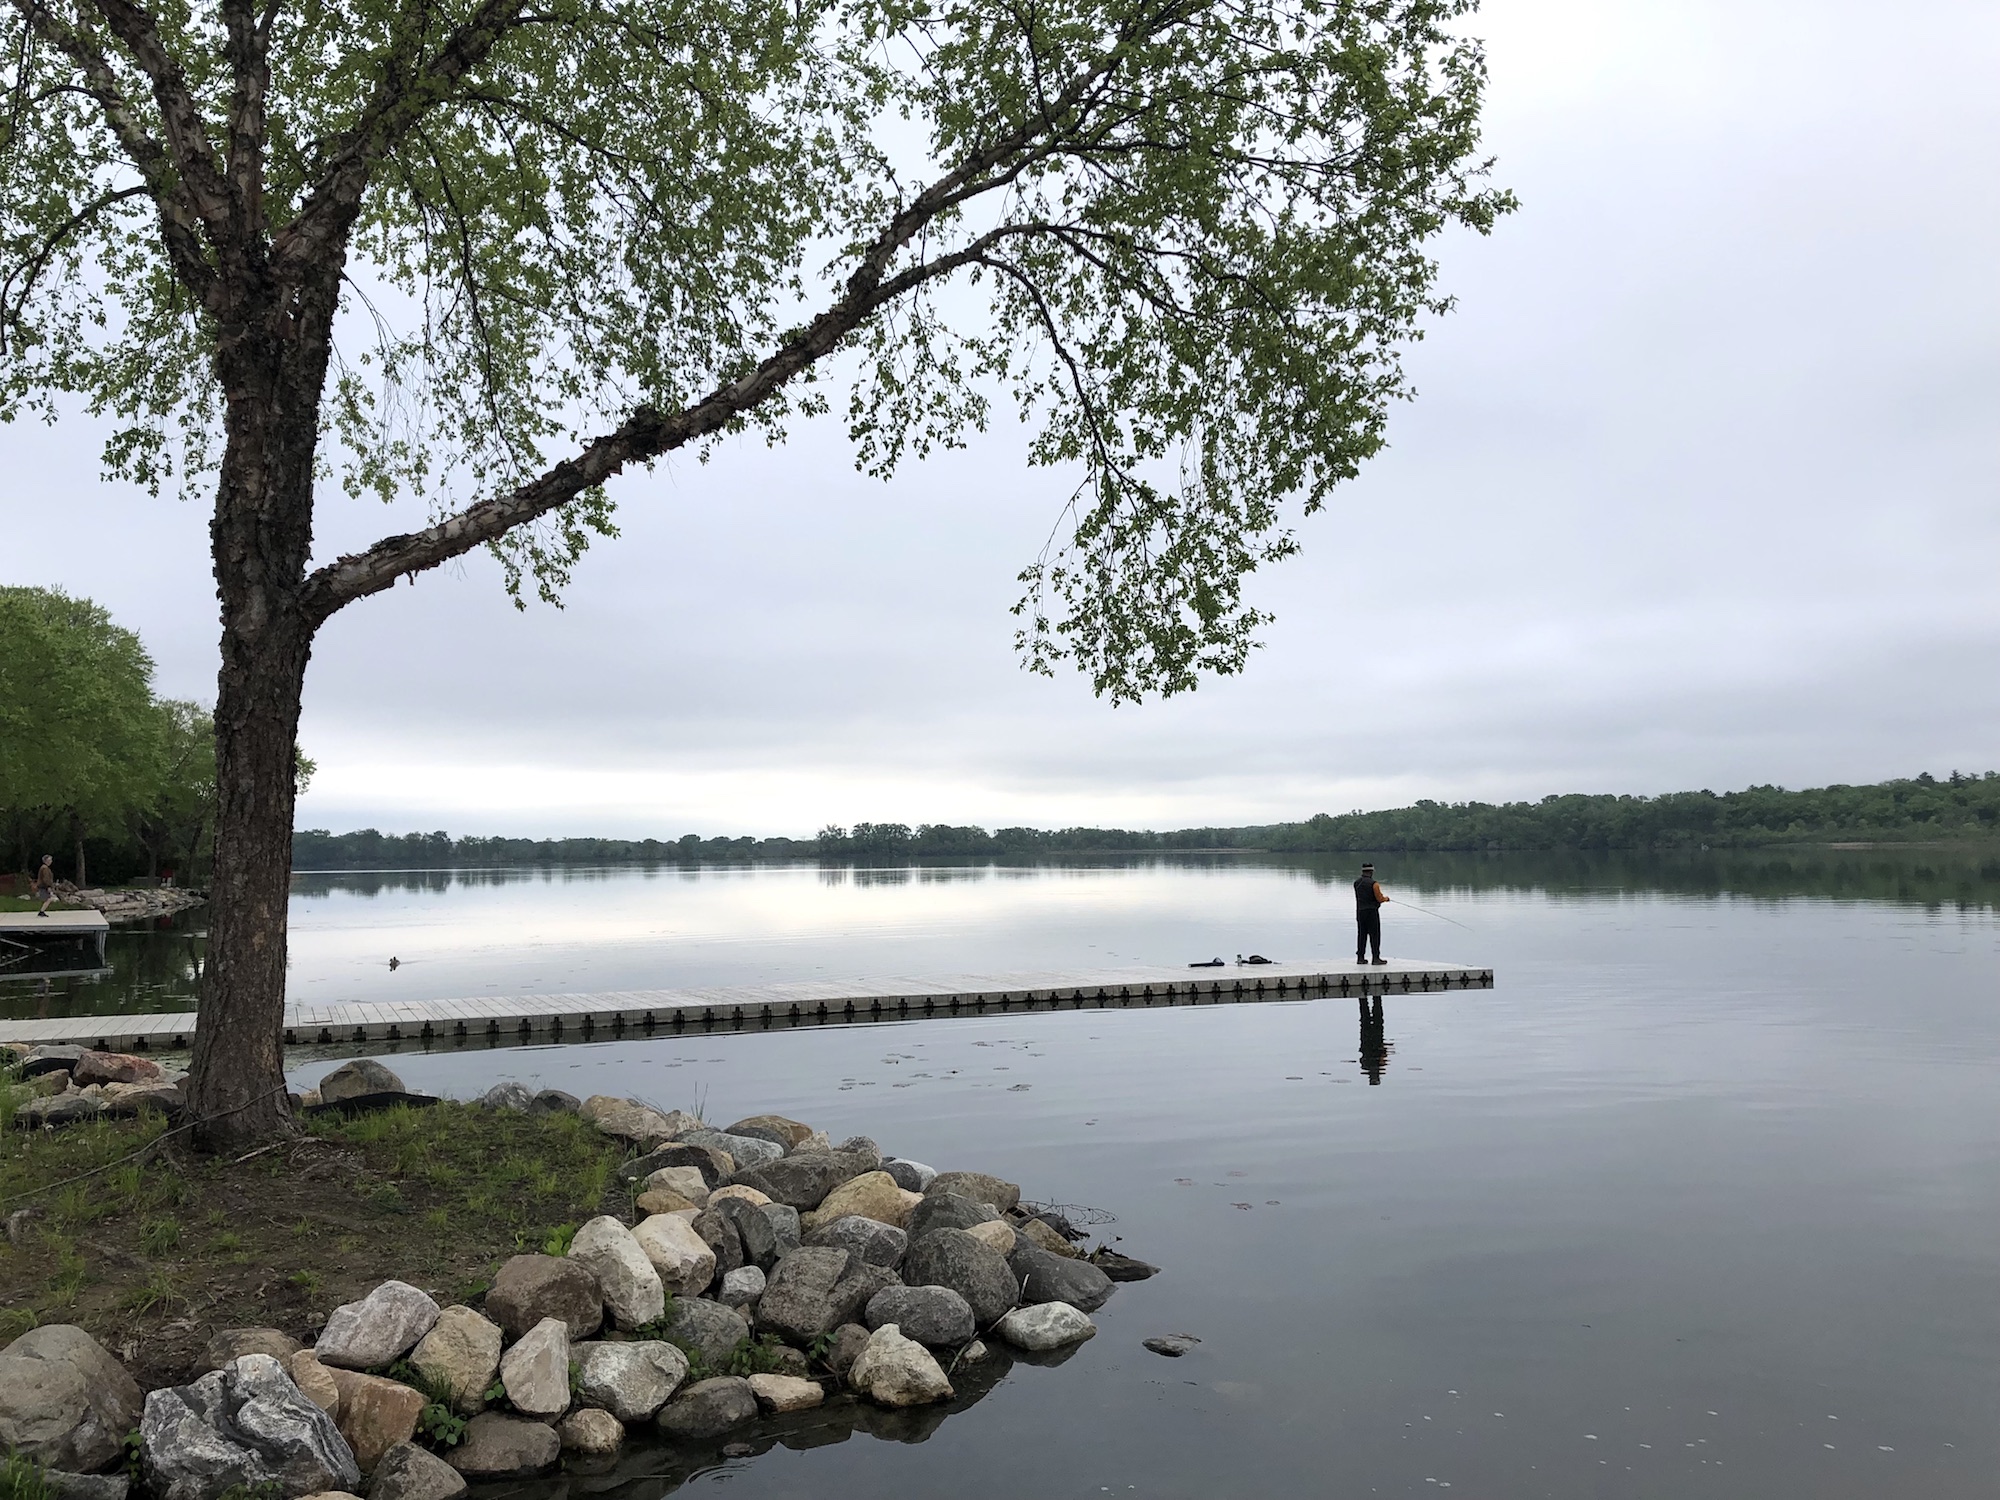 Lake Wingra on May 29, 2019.